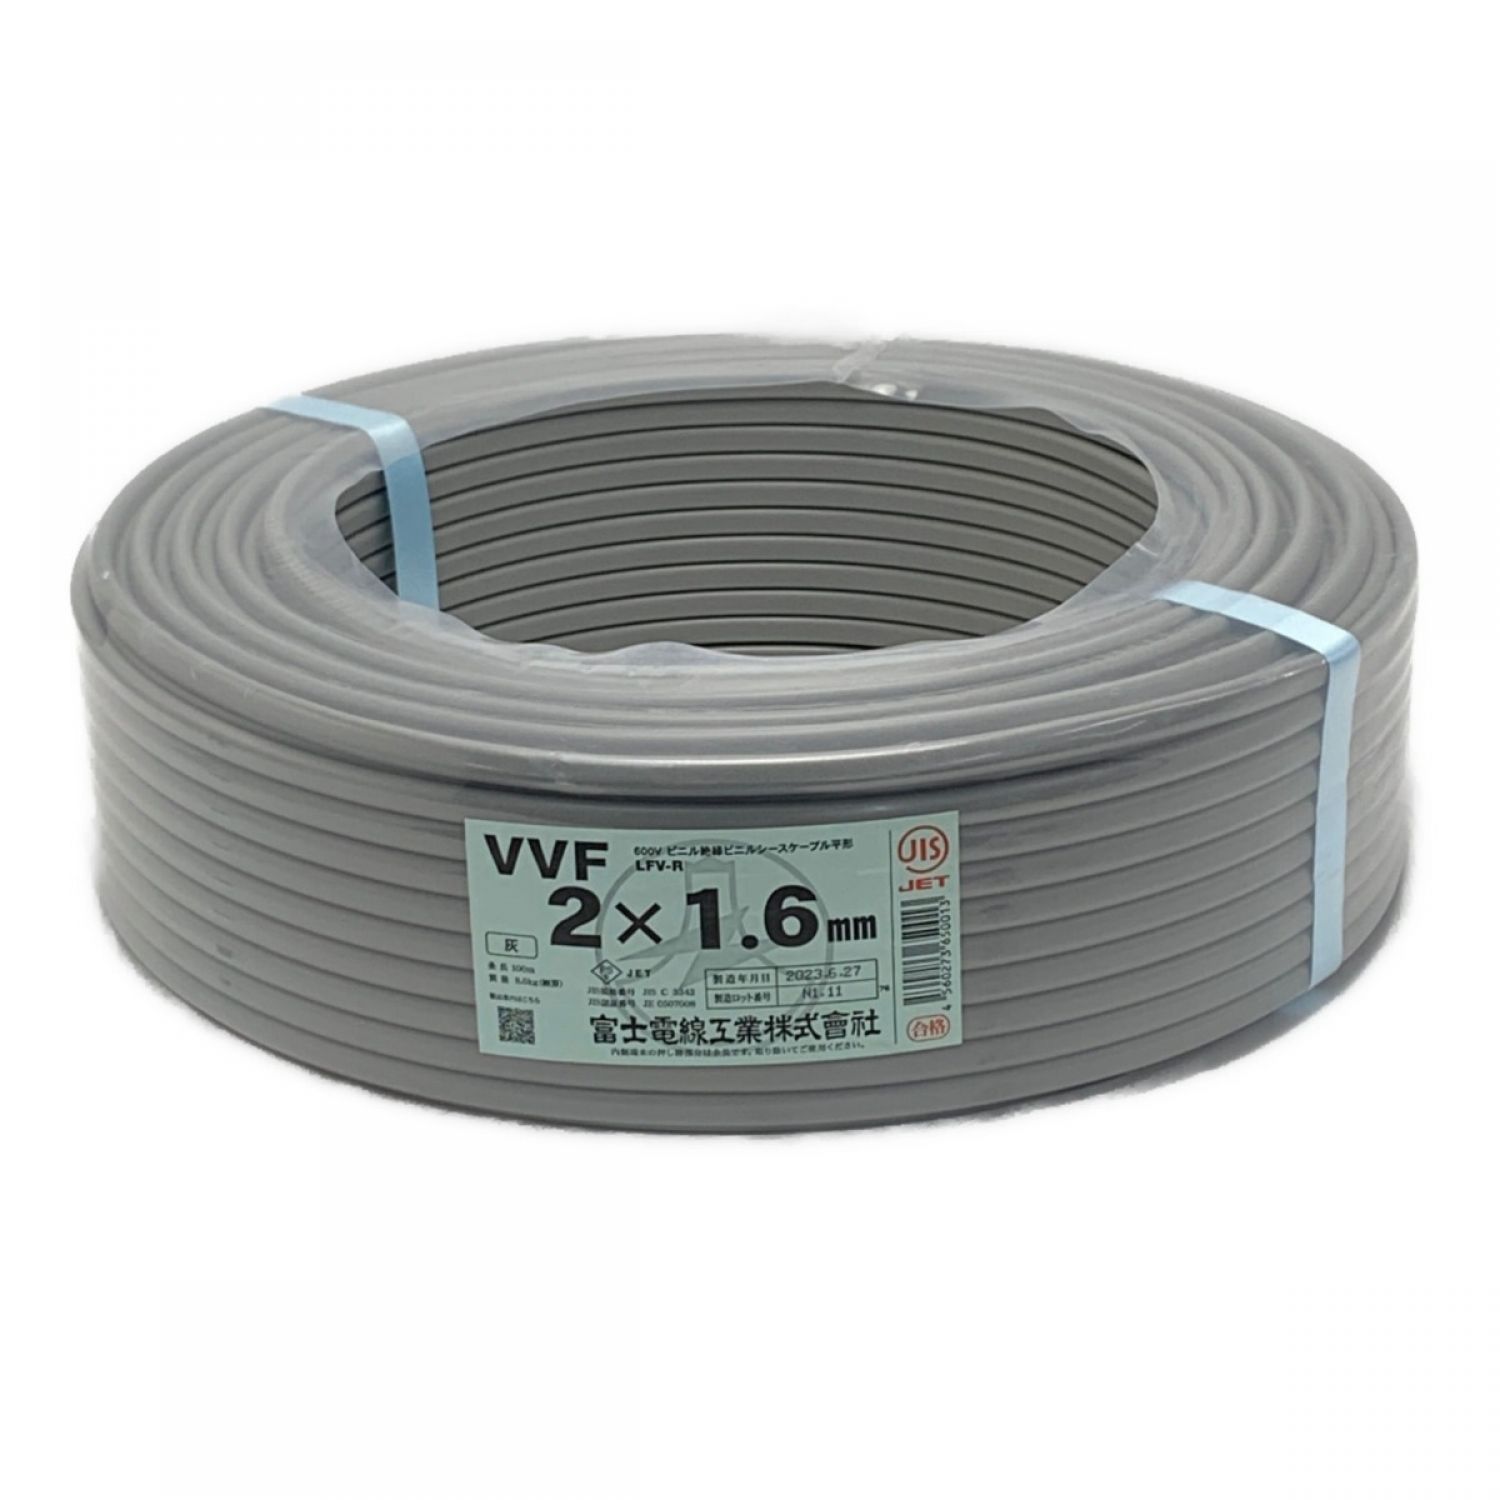 富士電線工業(FUJI ELECTRIC WIRE) 《 VVFケーブル 平形 》100m巻 / 灰色 / VVF 2×1.6 Sランク